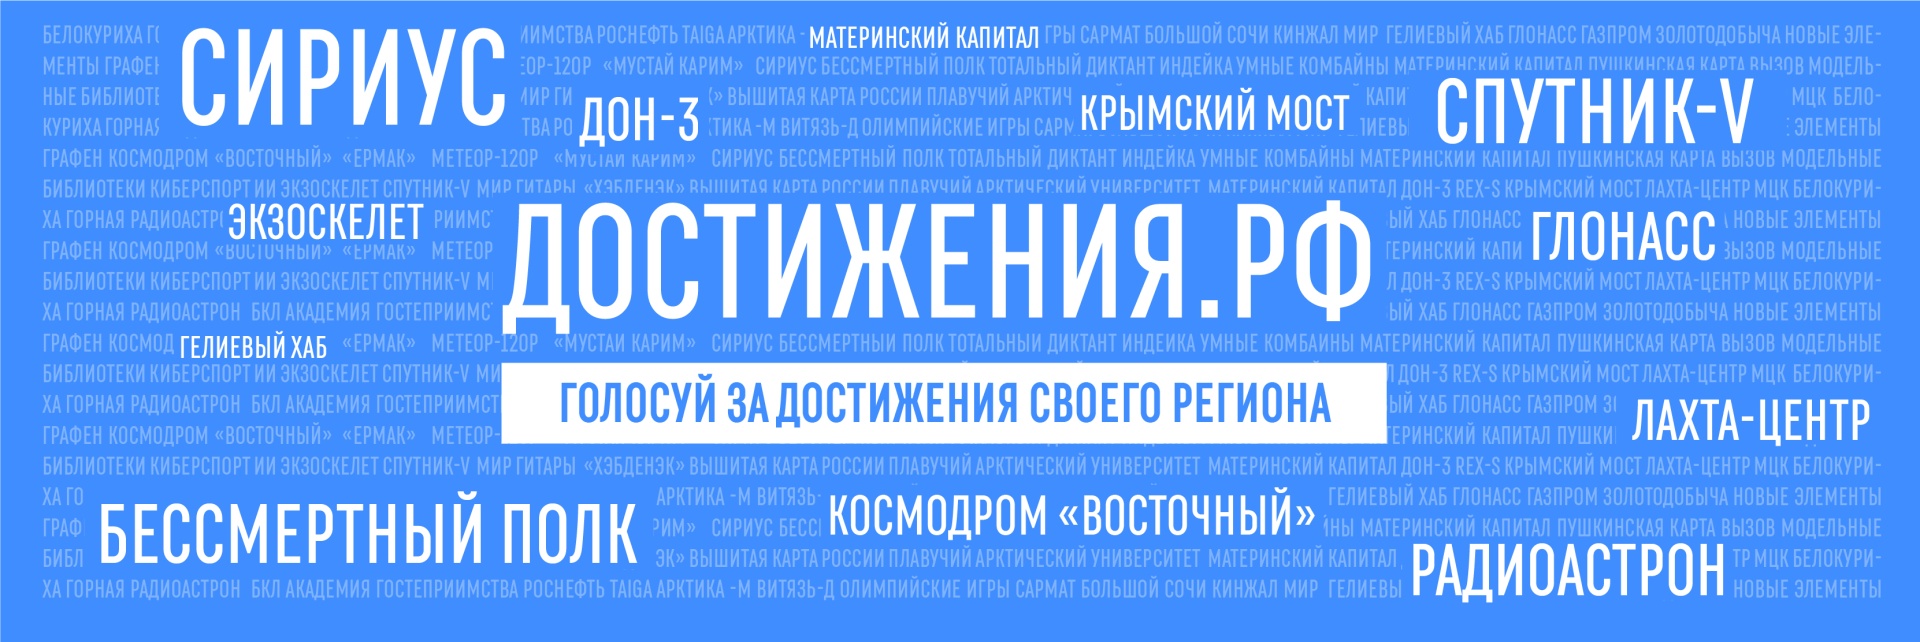 Петербург участвует в голосовании за значимые достижения региона